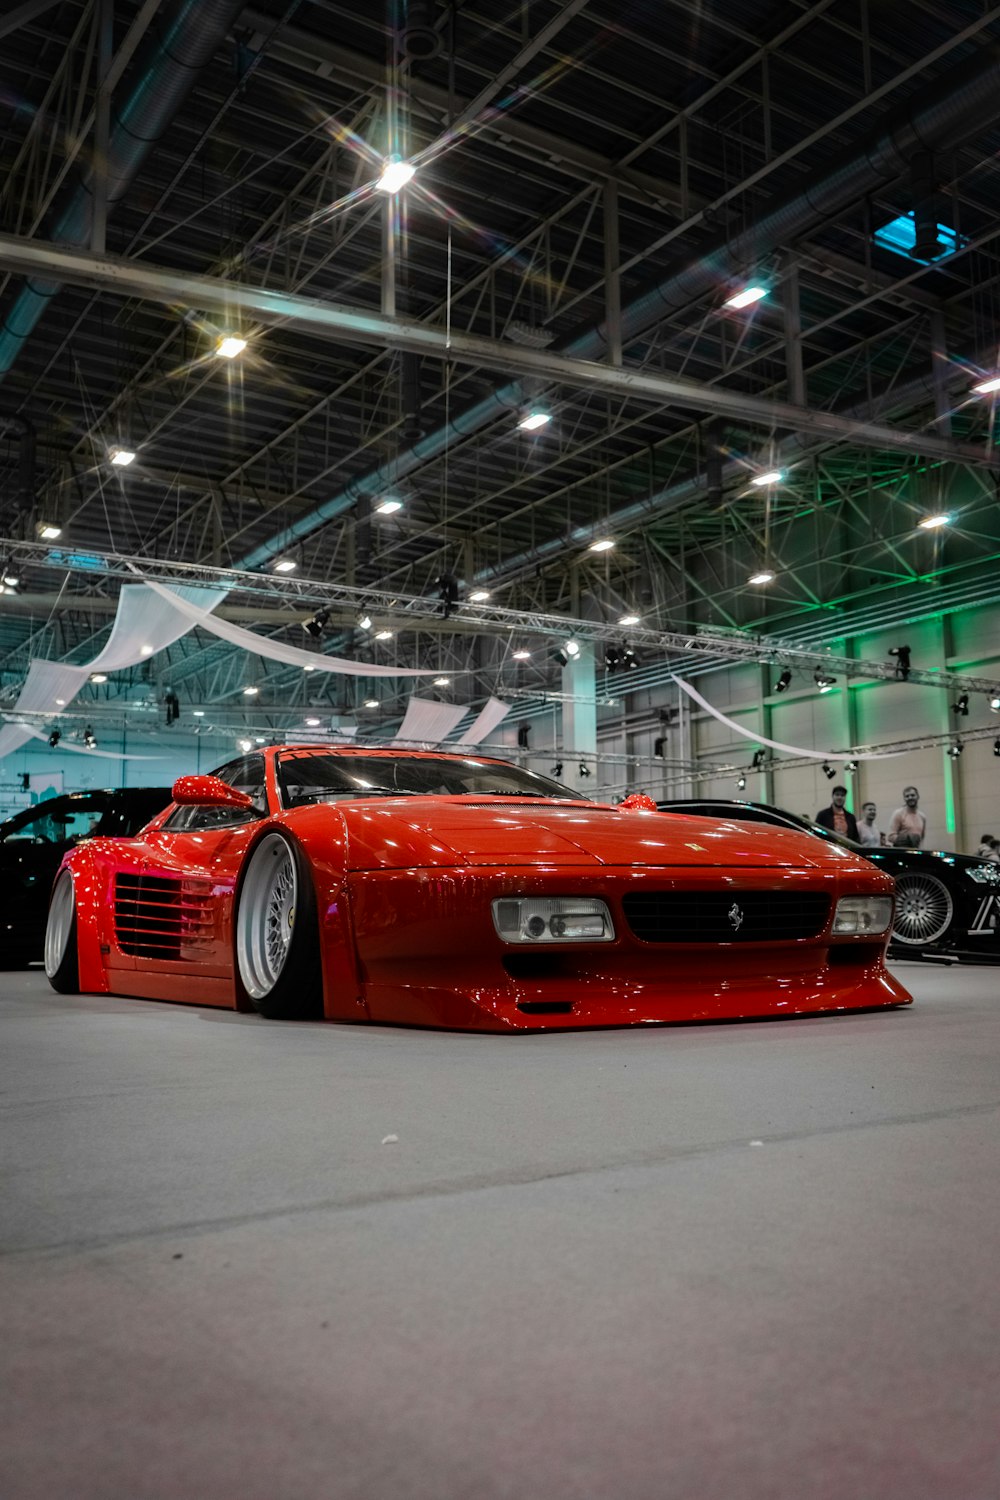 Une voiture de sport rouge garée dans un garage